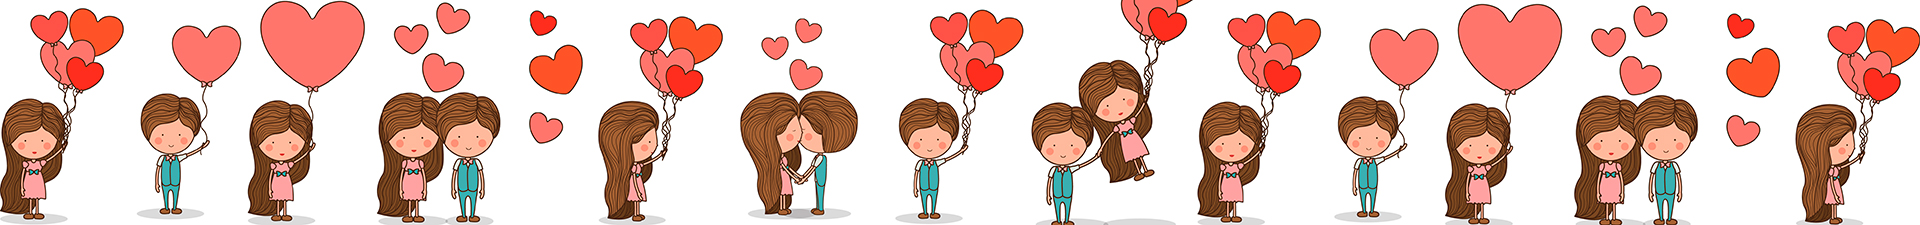 Saint Valentin : idées cadeaux pour les amoureux